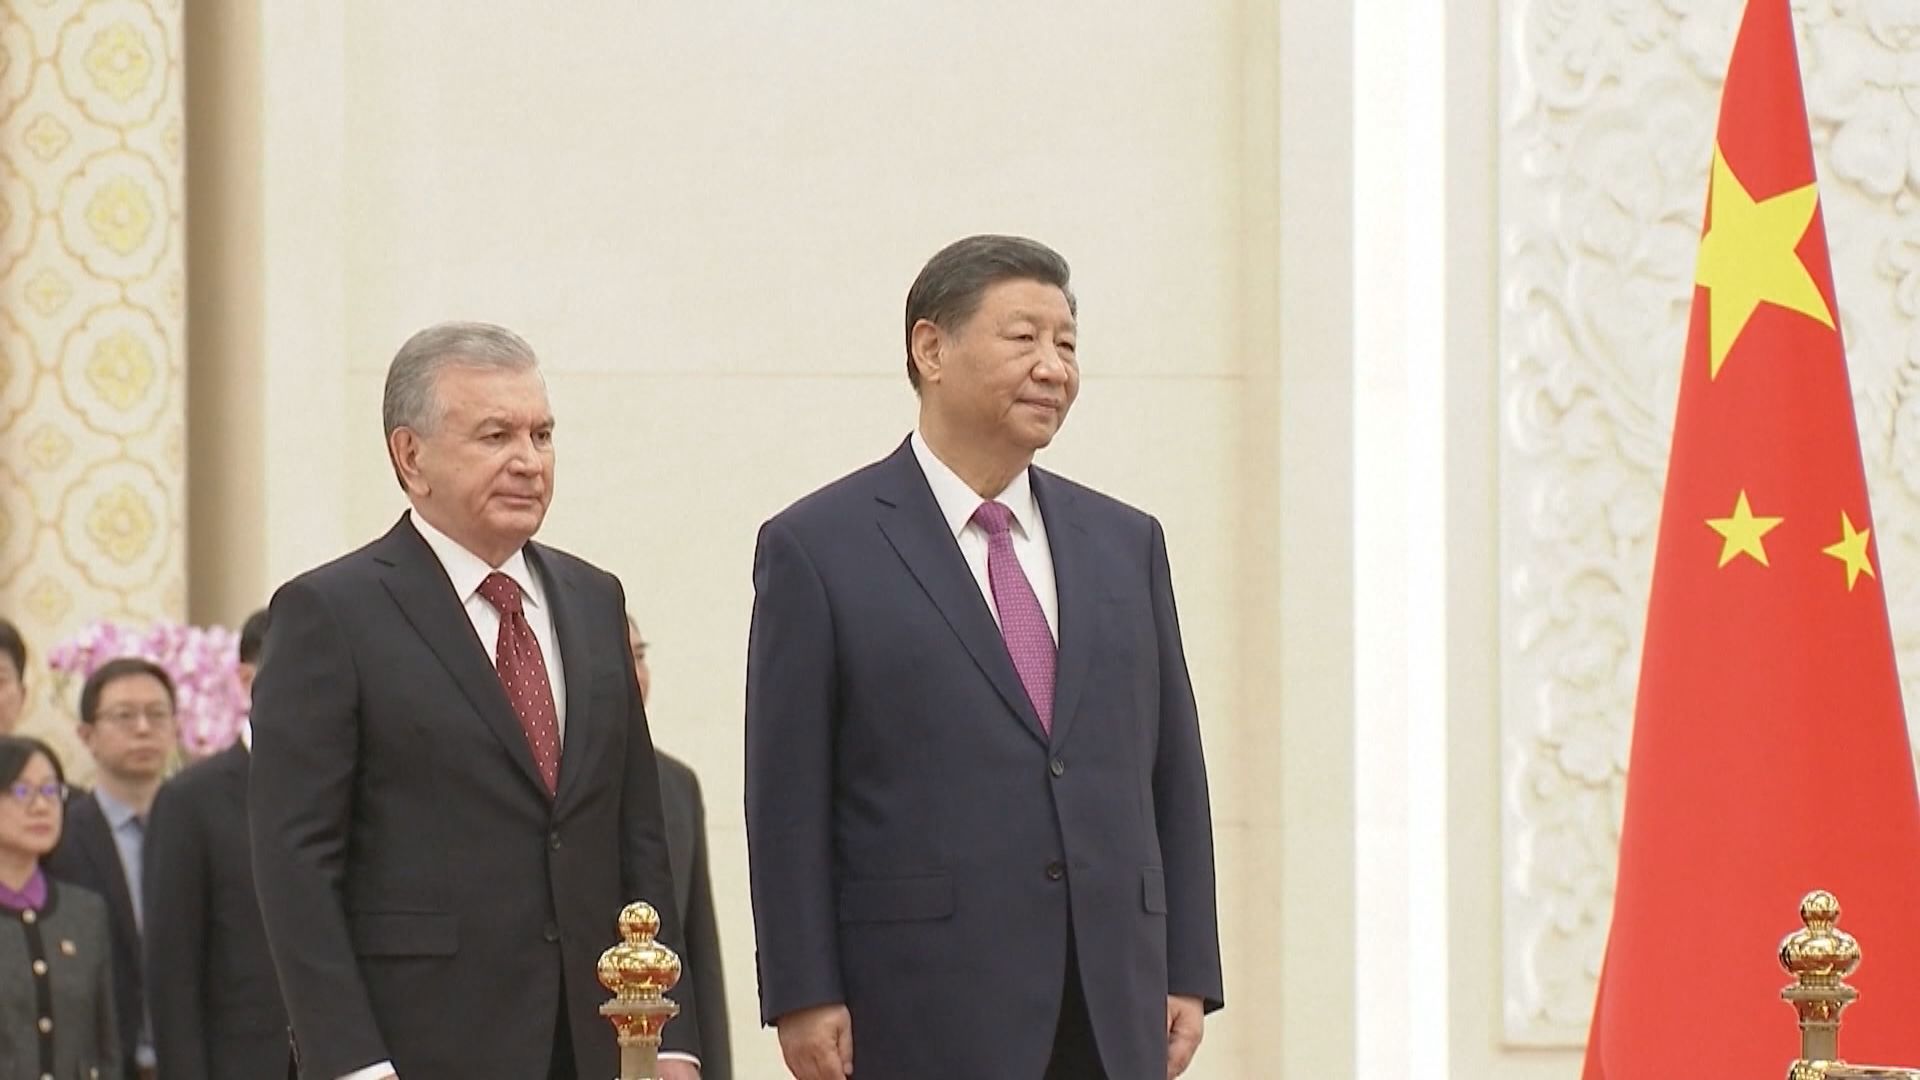 習近平晤烏茲別克總統 宣布發展新時代全天候全面戰略伙伴關係